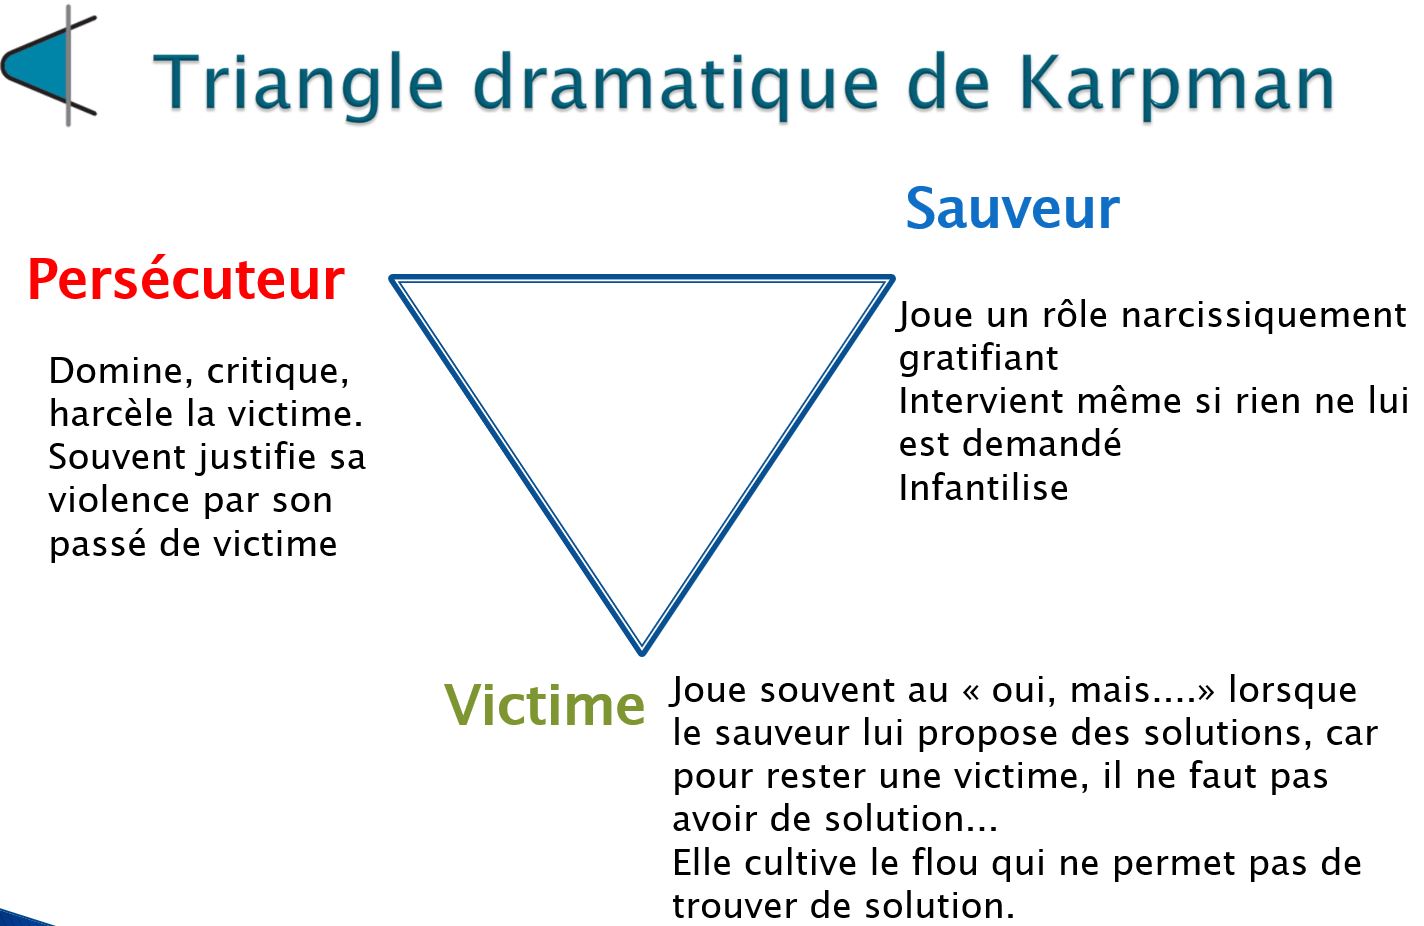 Le Triangle dramatique de Karpman